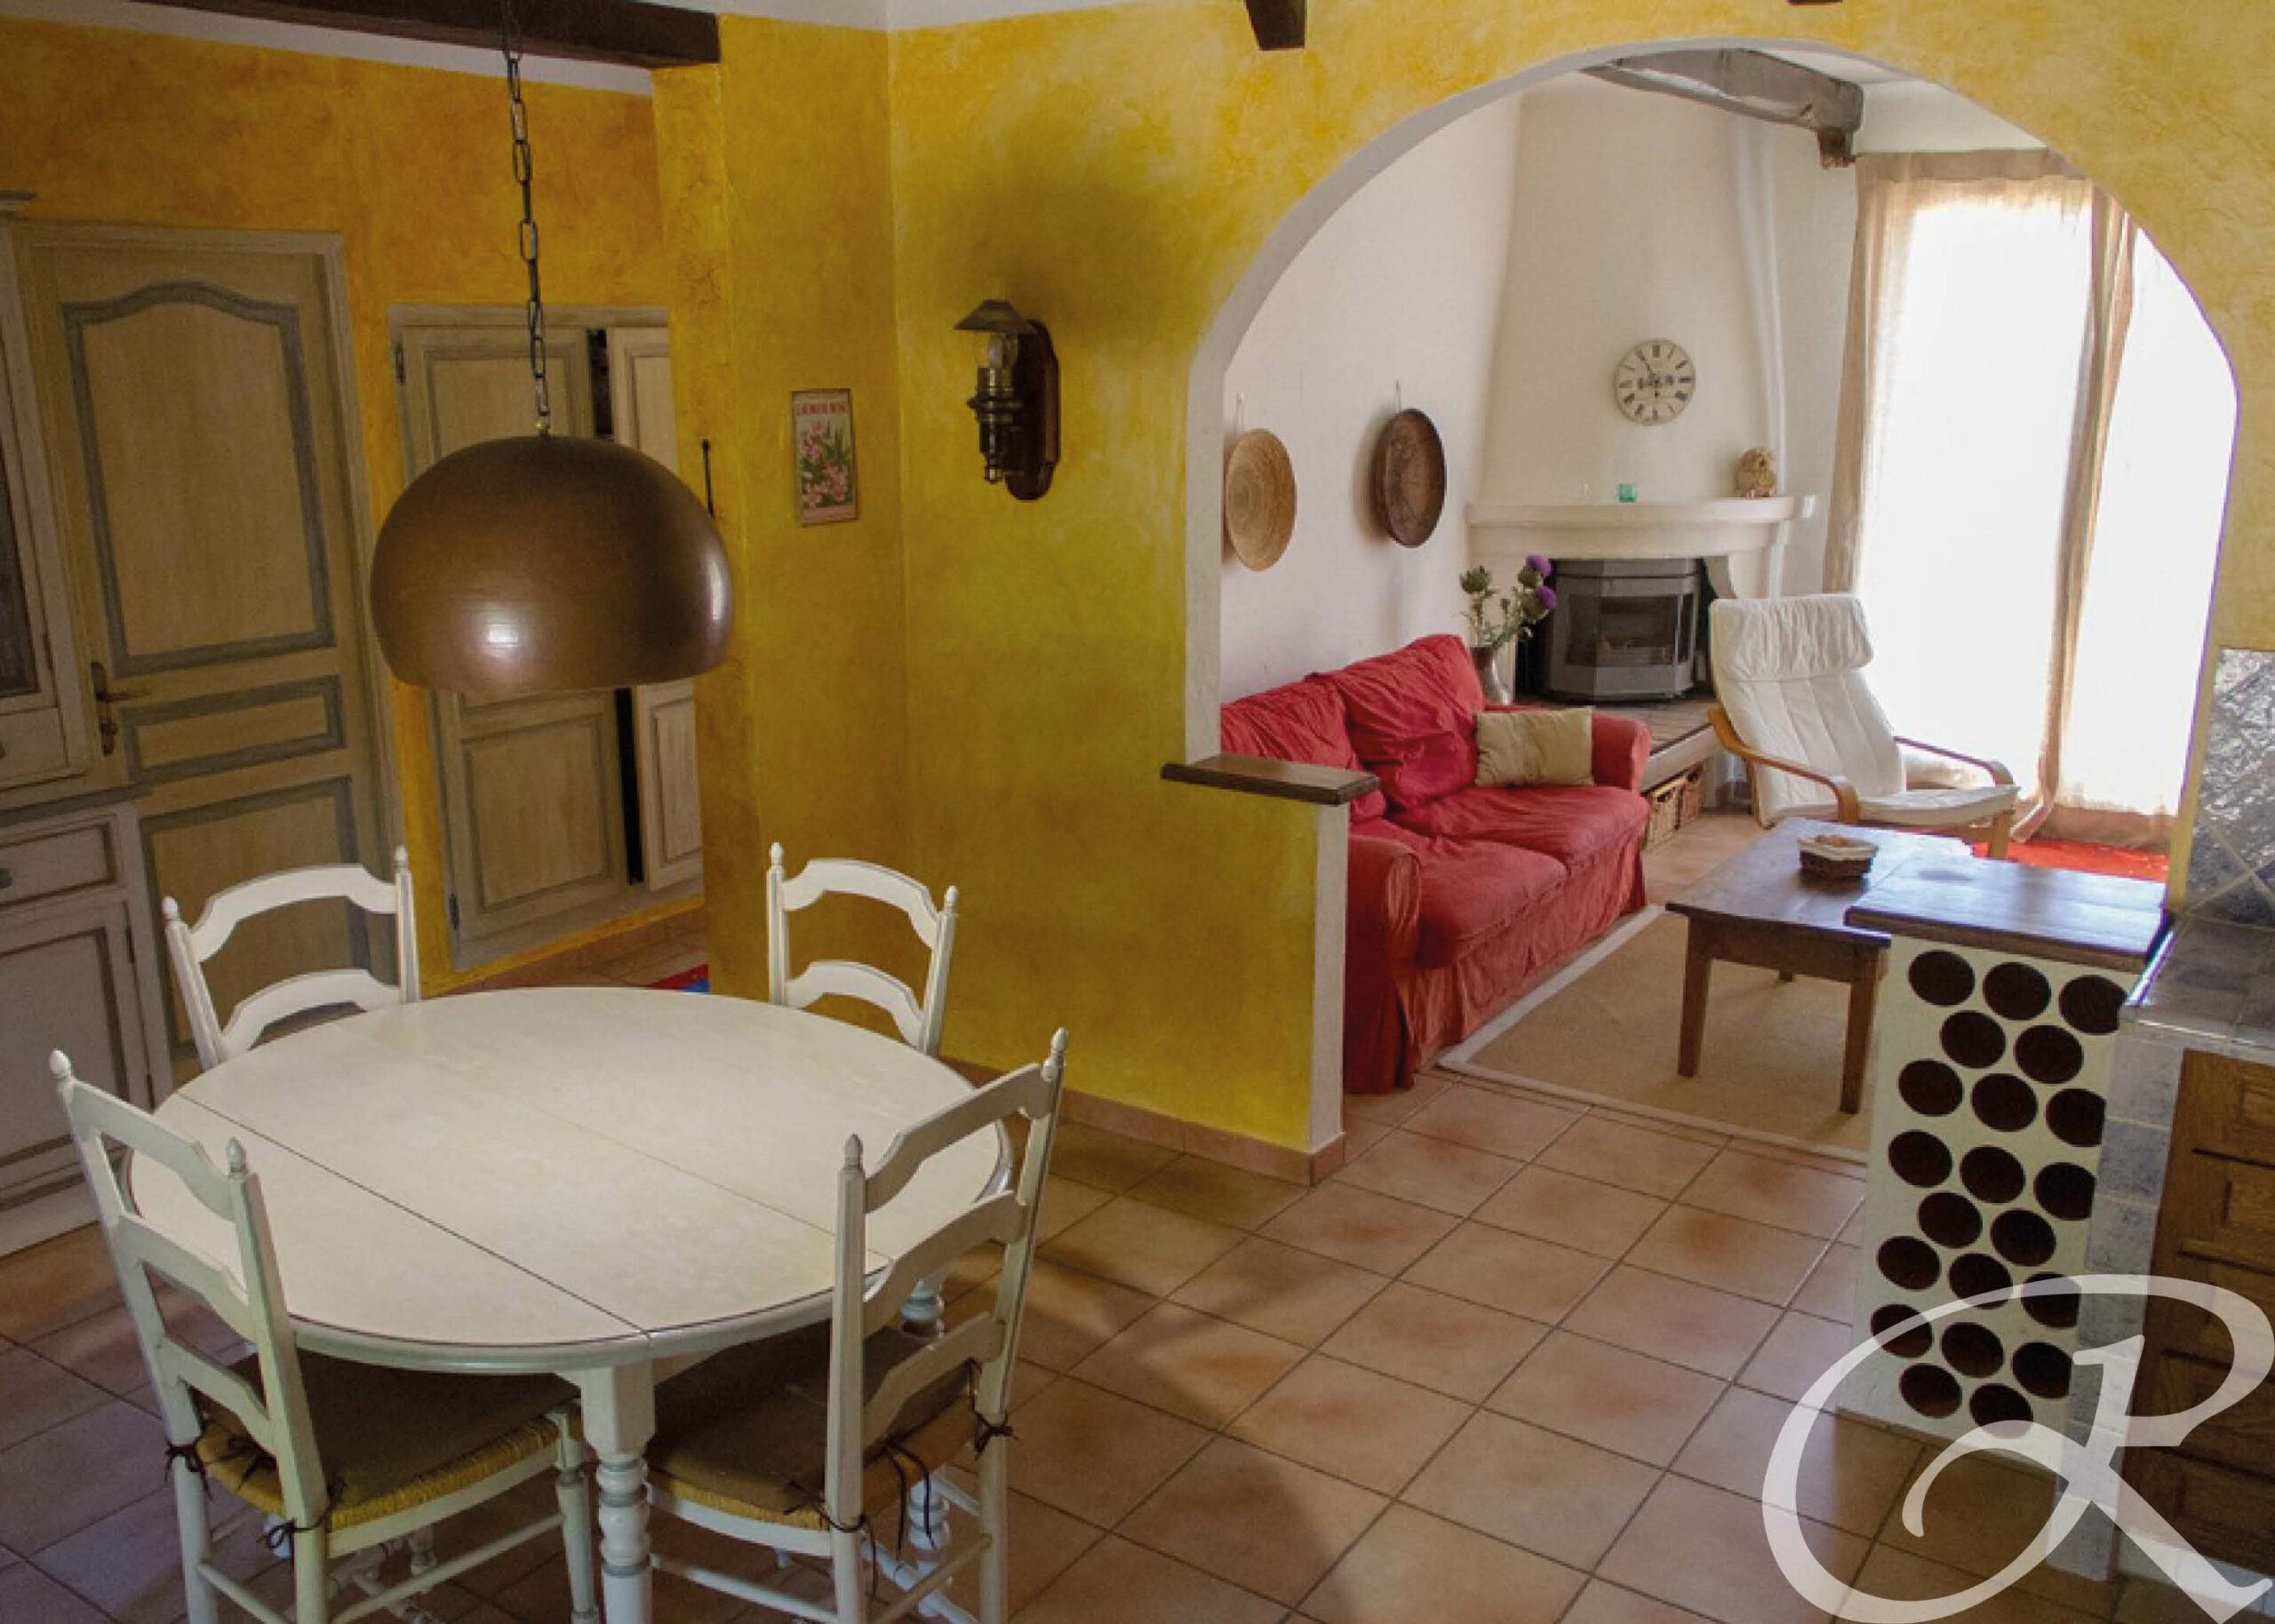 Appartement meublé 60 m2 Châteauvert composés d’un salon avec une cheminée, 2 couchages - situé à 40 minutes d'Aix-en-Provence